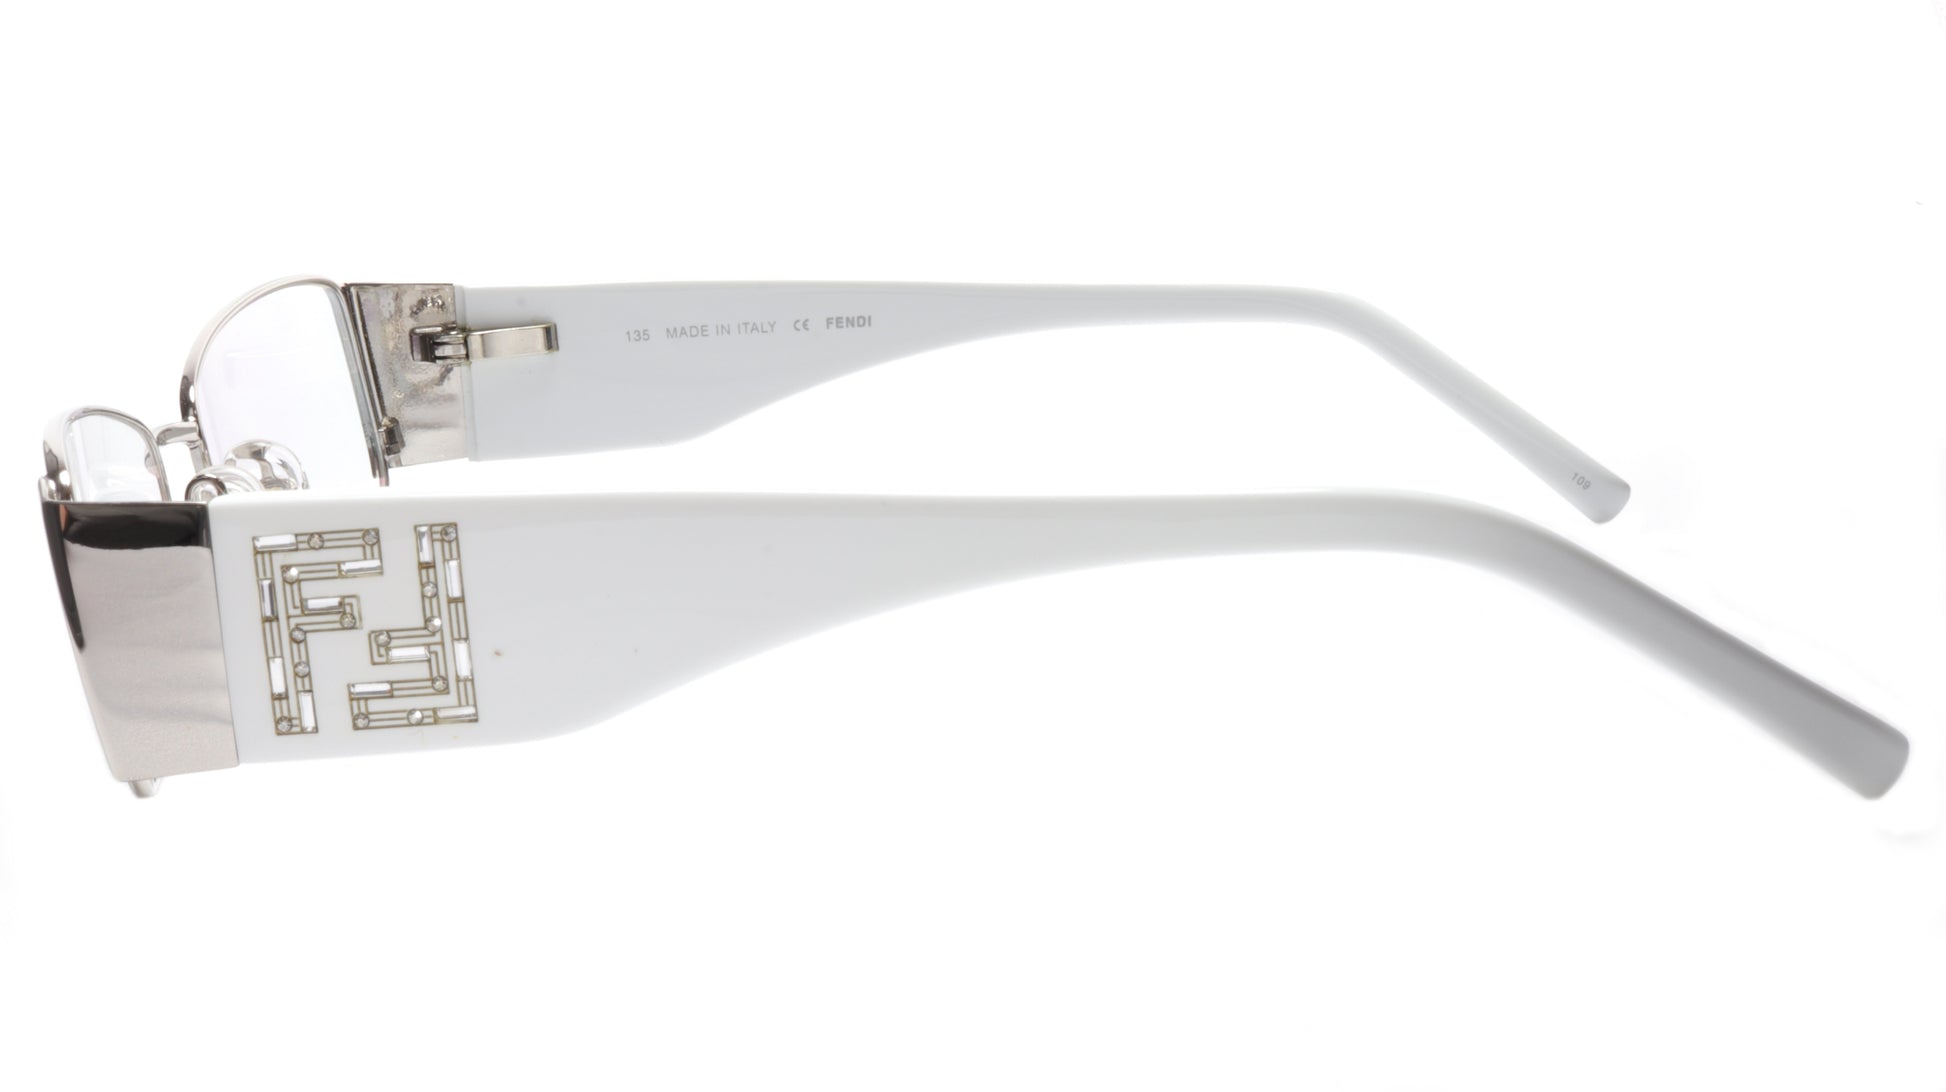 FENDI Eyeglasses Frame F923R (028) Metal Chrome White Italy Made 52-16-135, 28 - Frame Bay